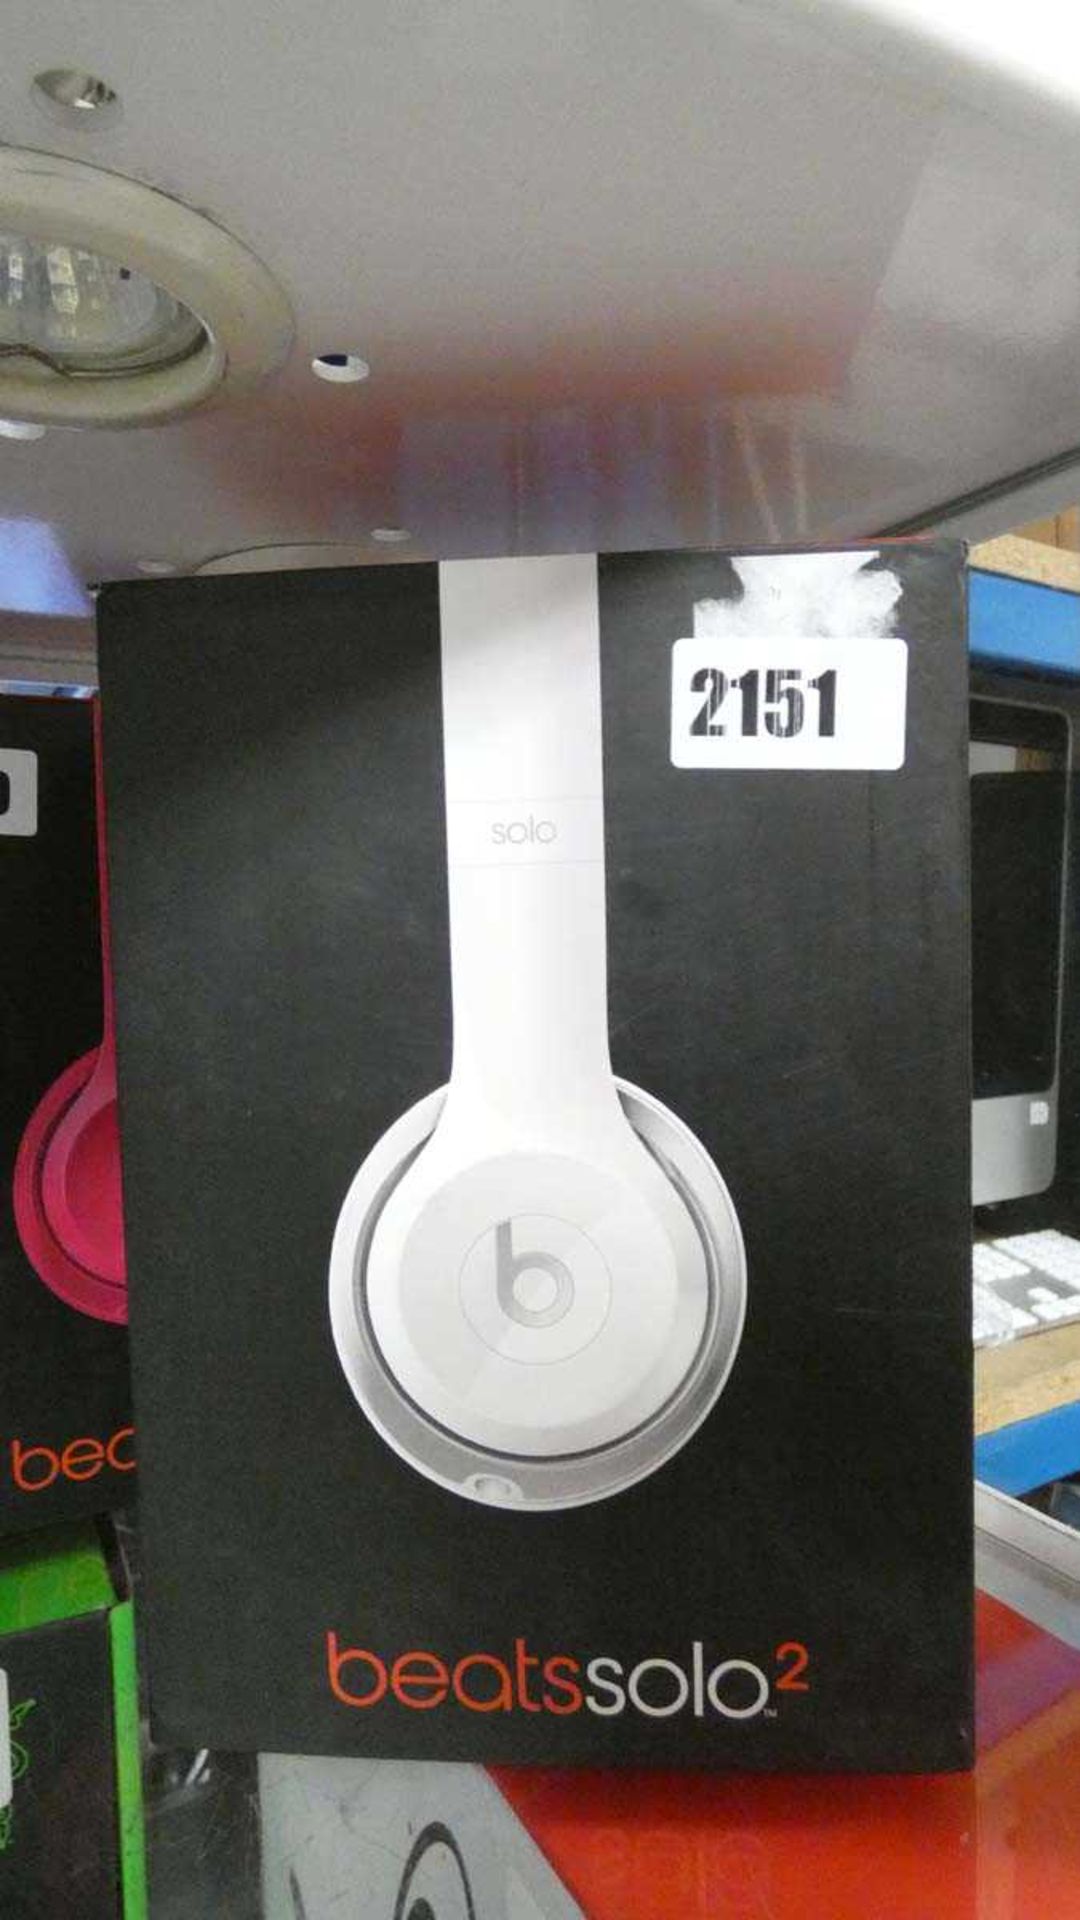 Beats Solo 2 headphones in white